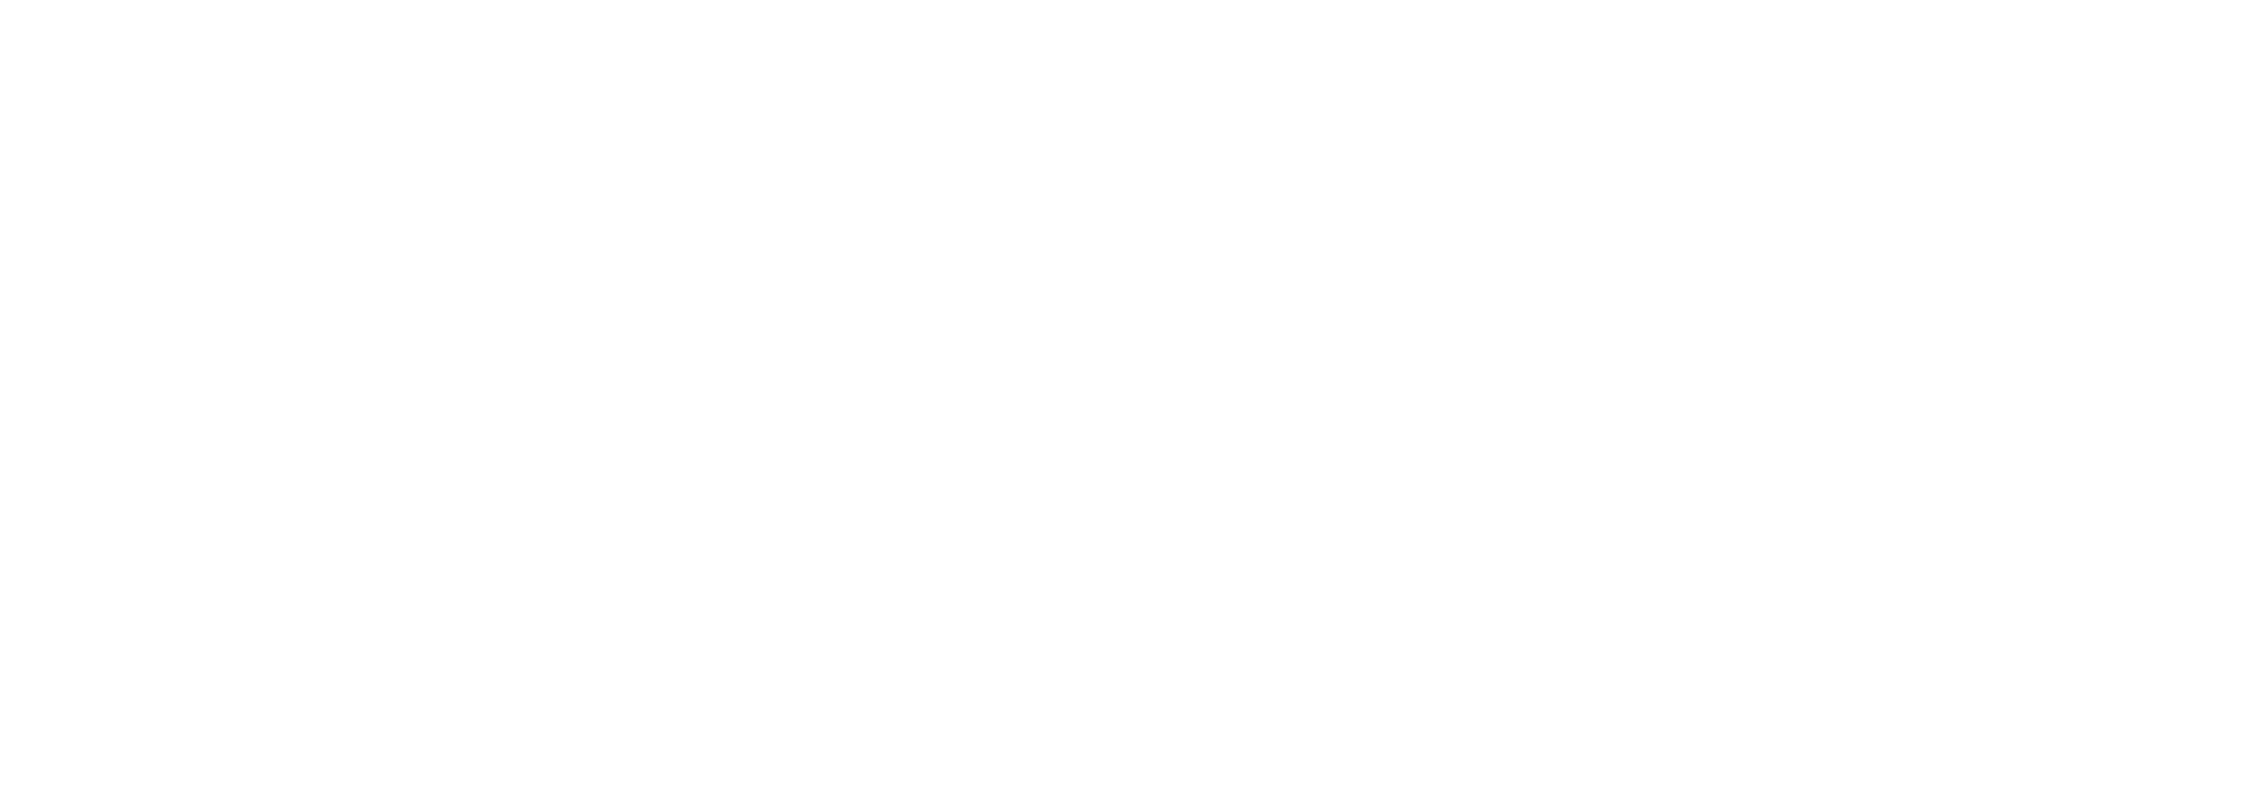 Snow Cream Mountain Logo - British Ski School in Morzine - All Mountain Snowsports